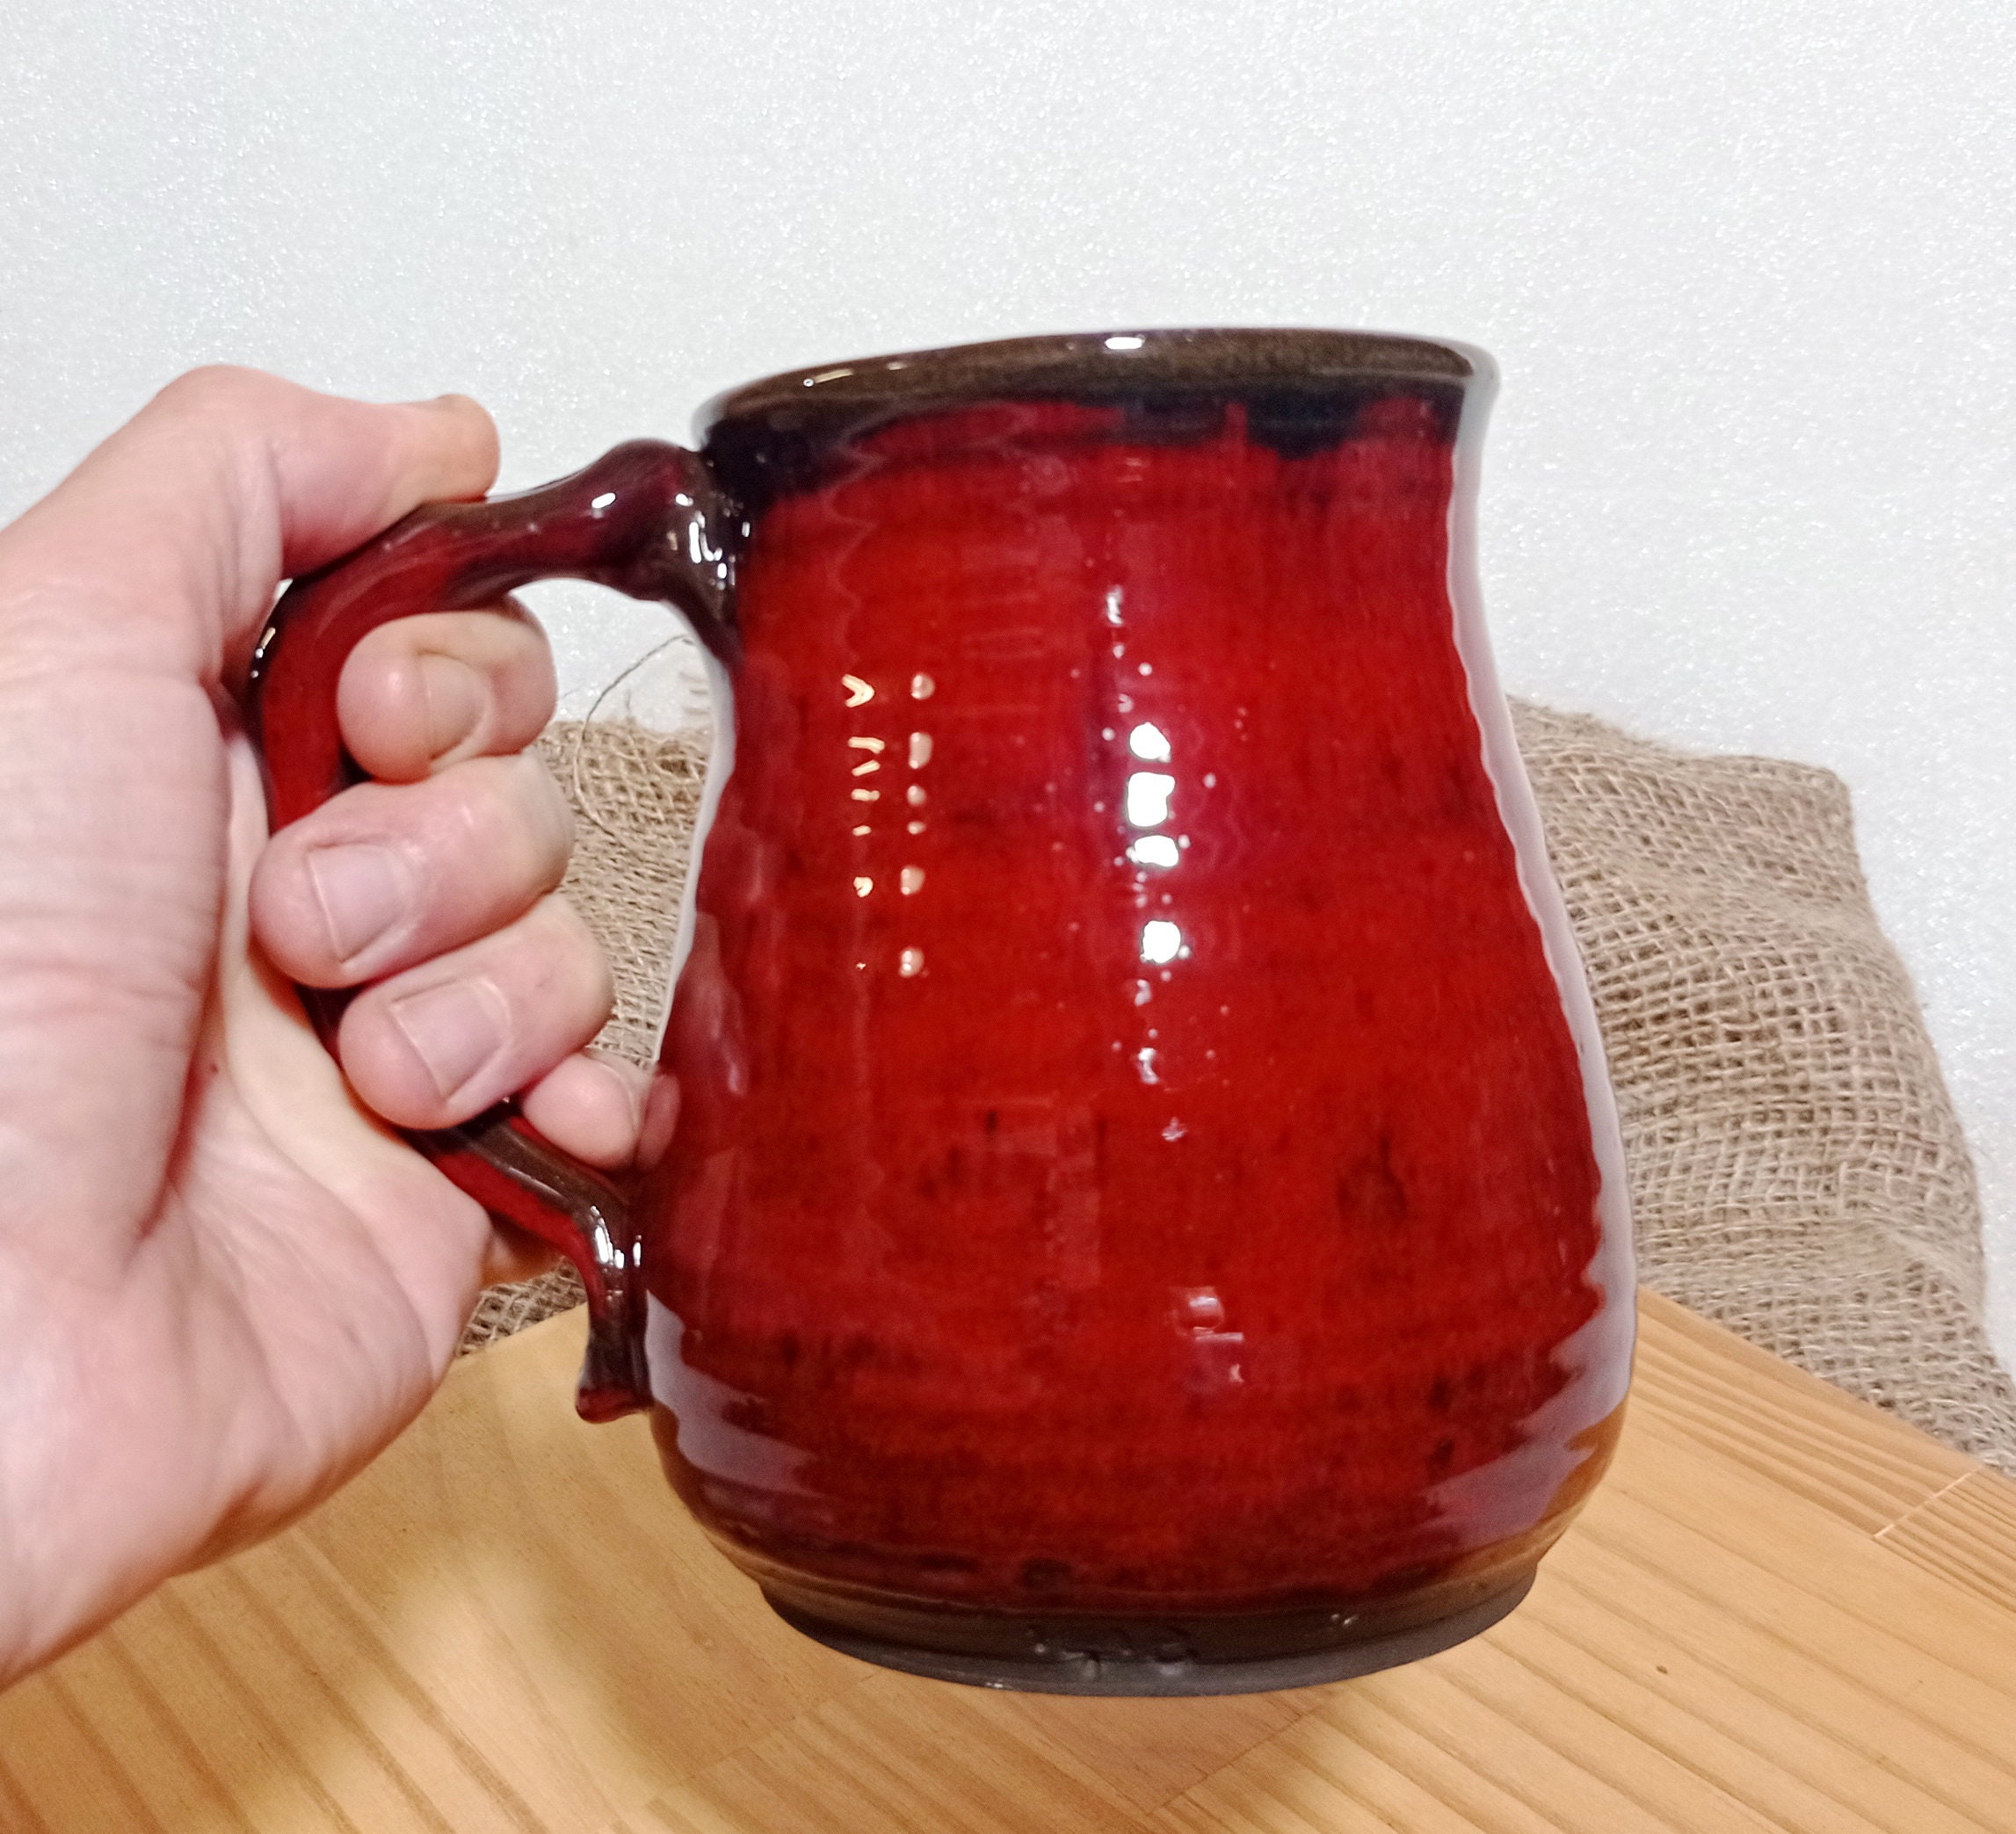  MACHUMA 22 Oz Large Ceramic Coffee Mug, Big Jumbo Tea